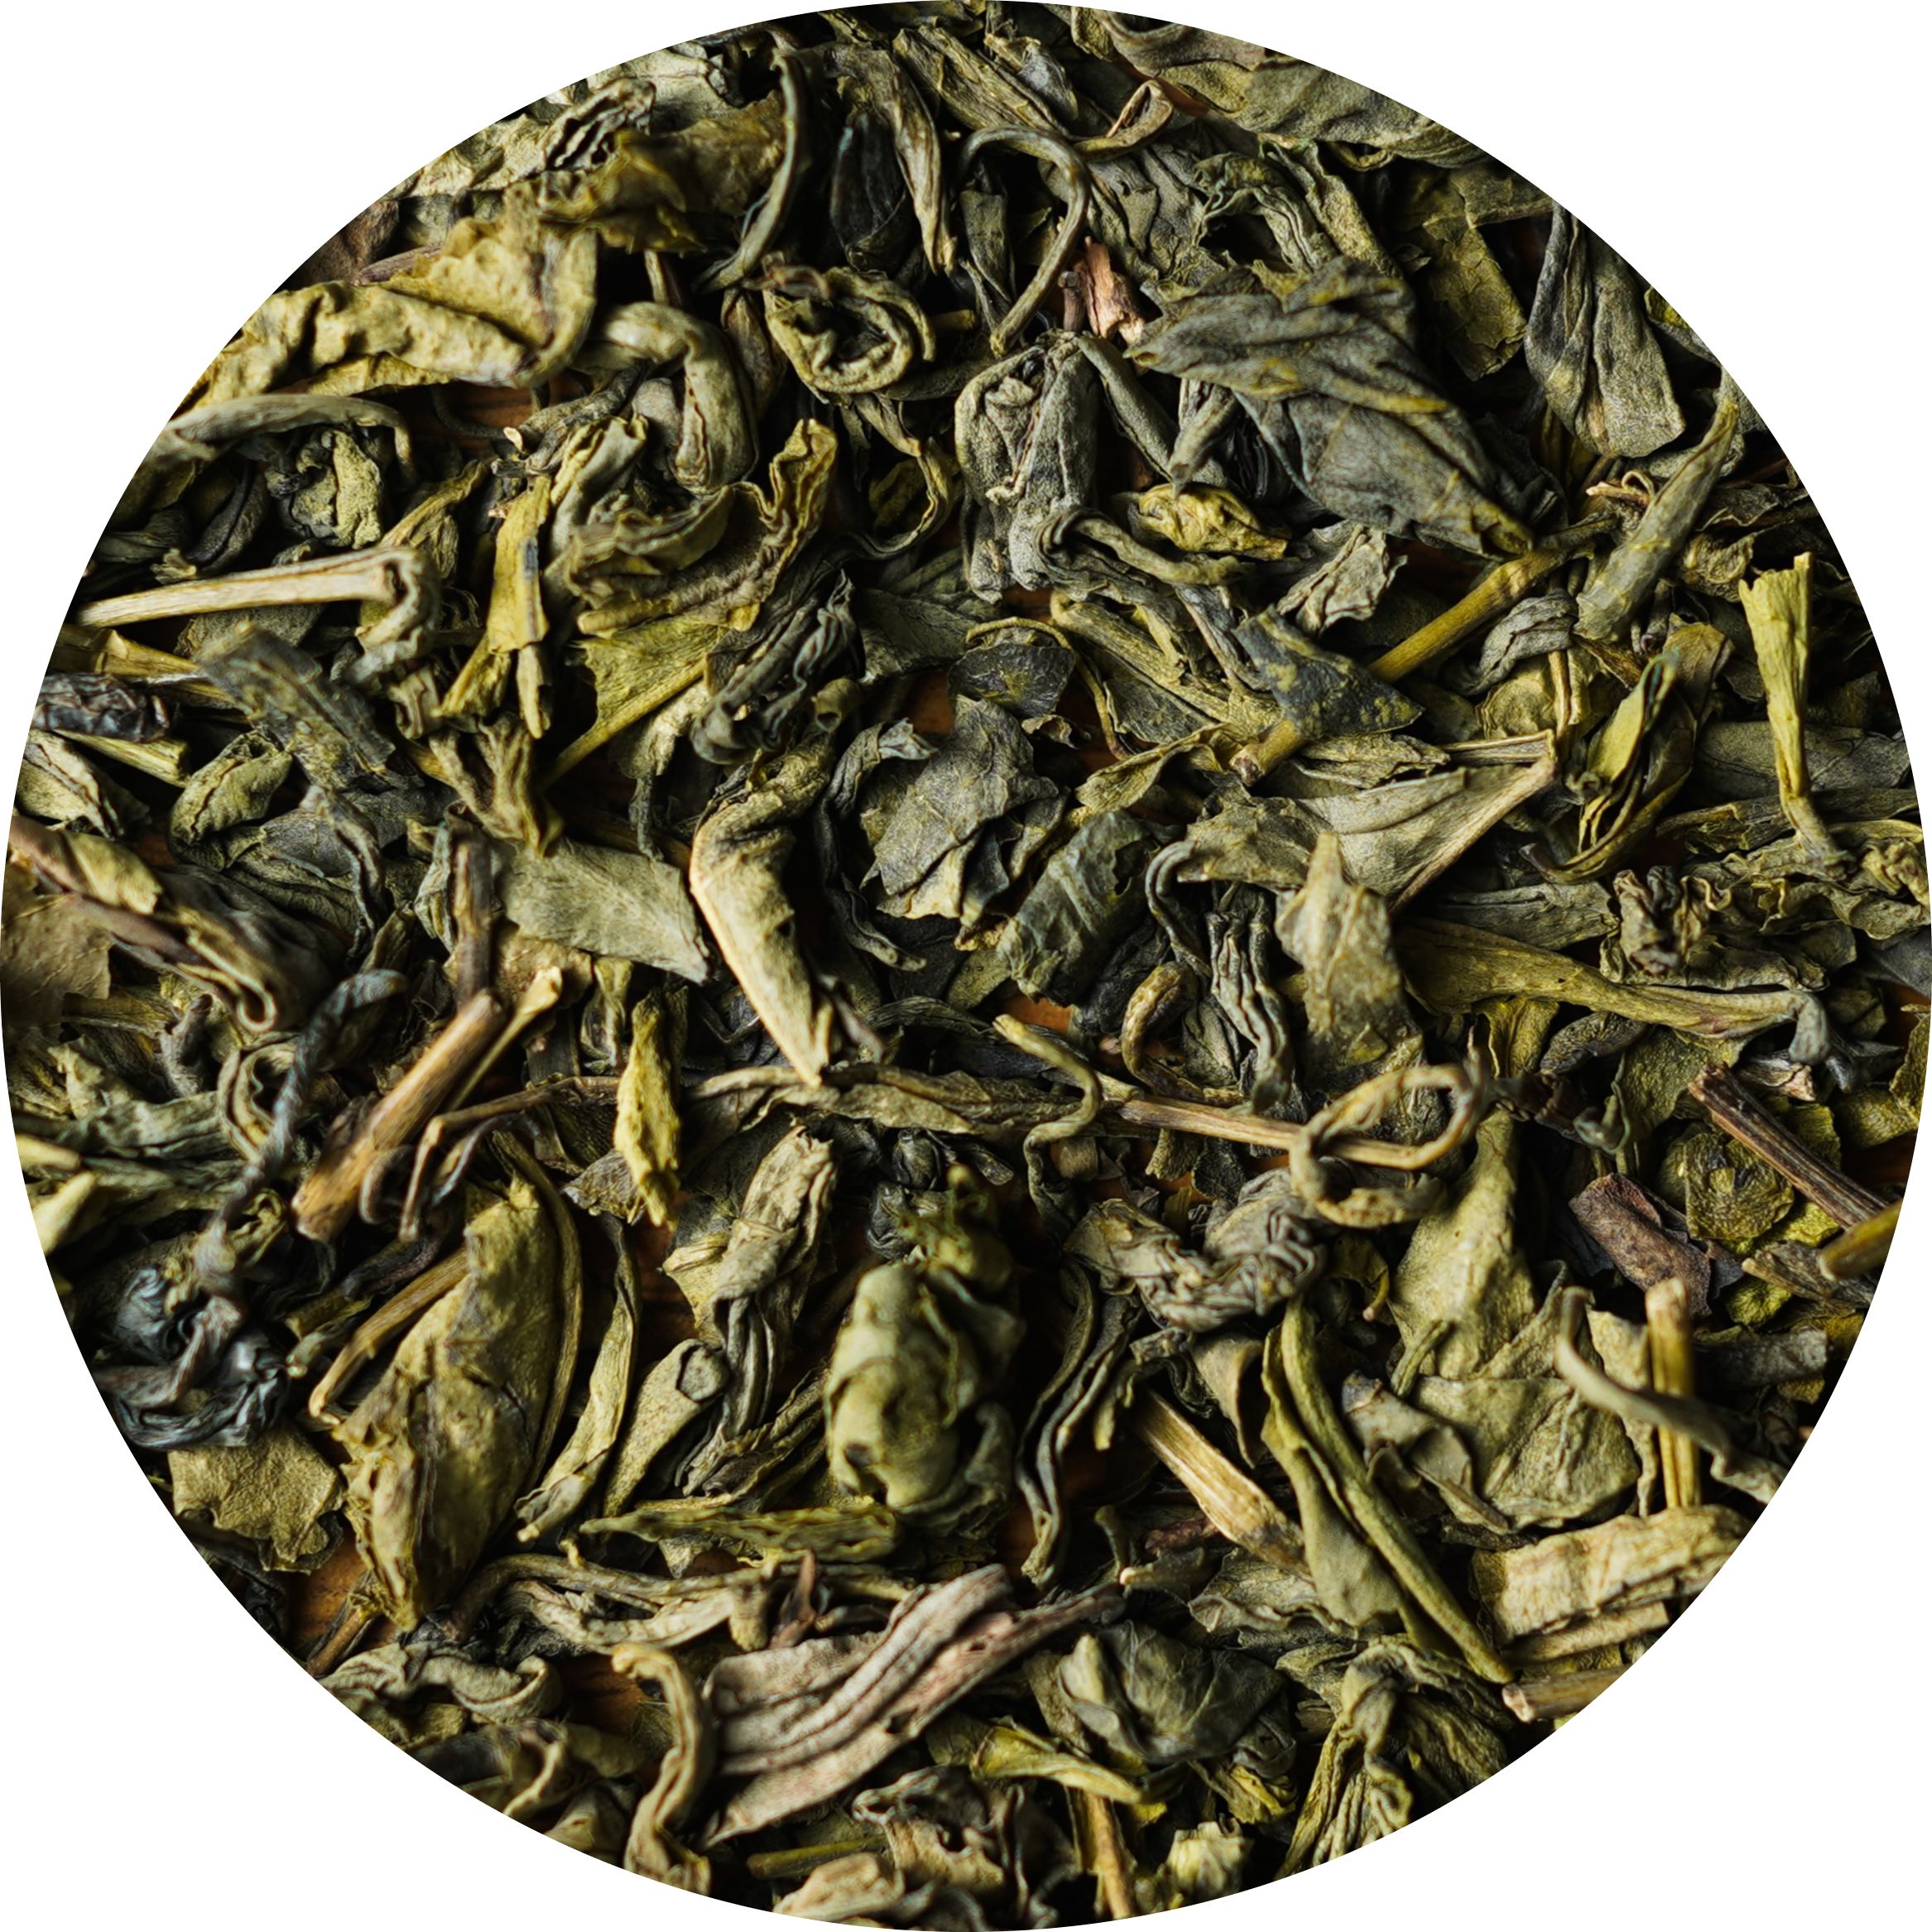 Узбекский чай 95. Зелёный чай Шах Масуд 95. Чай узбекский, зеленый №95 "Шахчай. Чой 95 чай. 95 Чай зеленый узбекский.